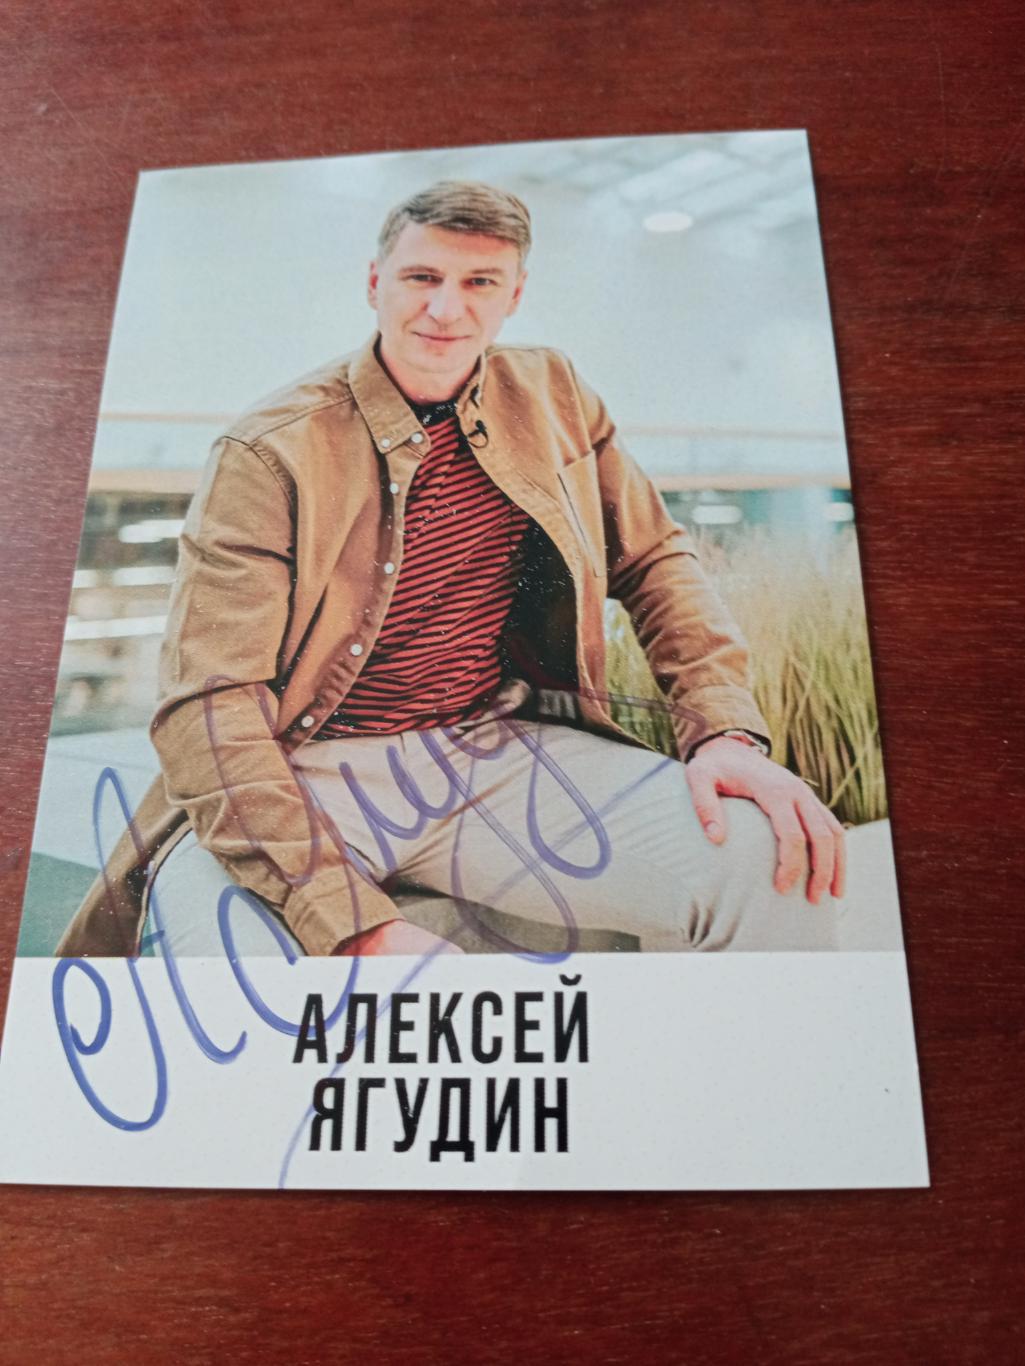 Автограф-сессия с Алексеем Ягудиным. + ПОДАРОК!